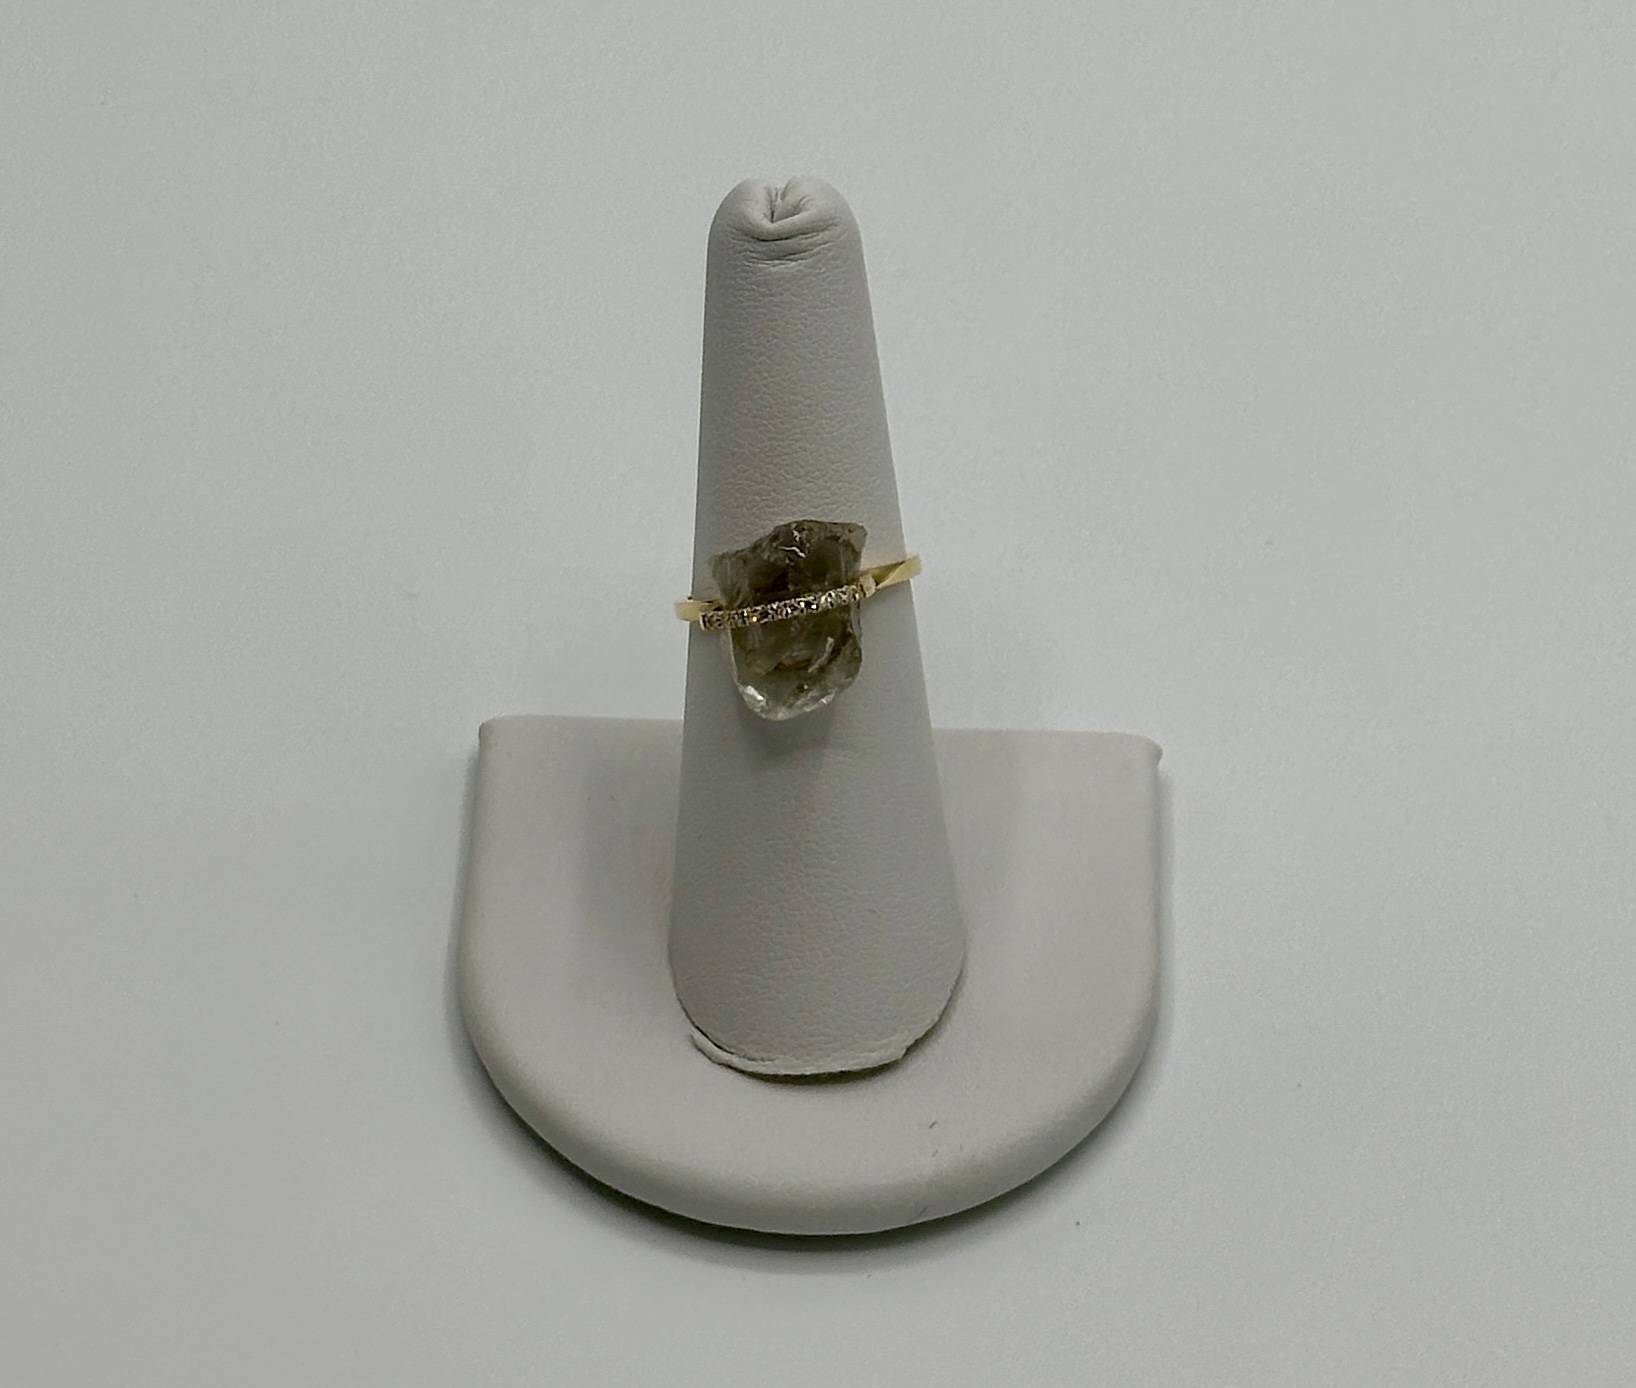 18 Karat, Yellow Gold, Raw Aquamarine and Diamond Ring Size 6.5 .10 Carat Diamond, 12.75 Carat Aquamarine